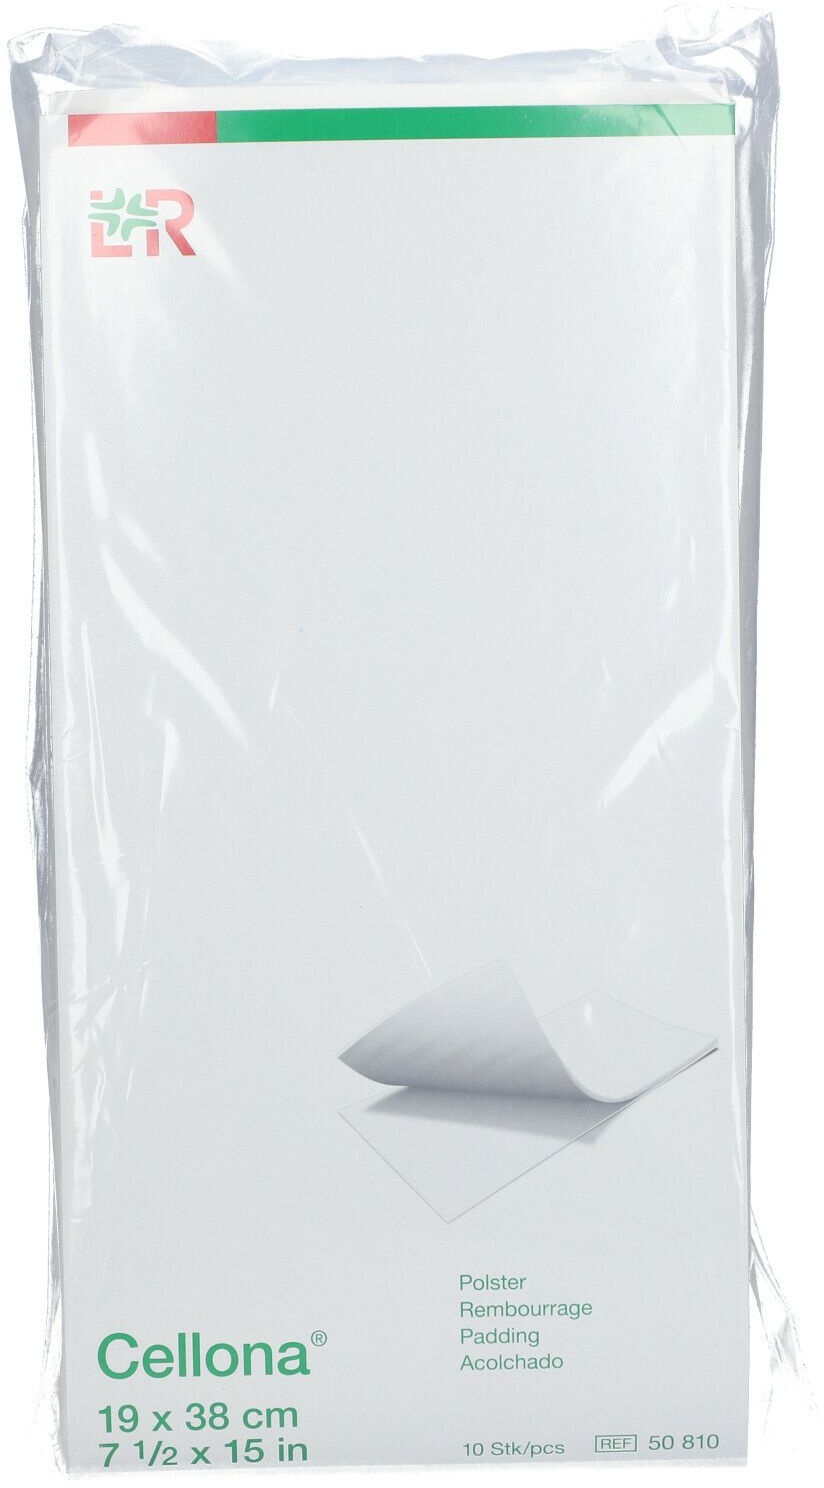 Cellona® Rembourrage 19 x 38 cm 10 pc(s) serviettes hygiénique(s)